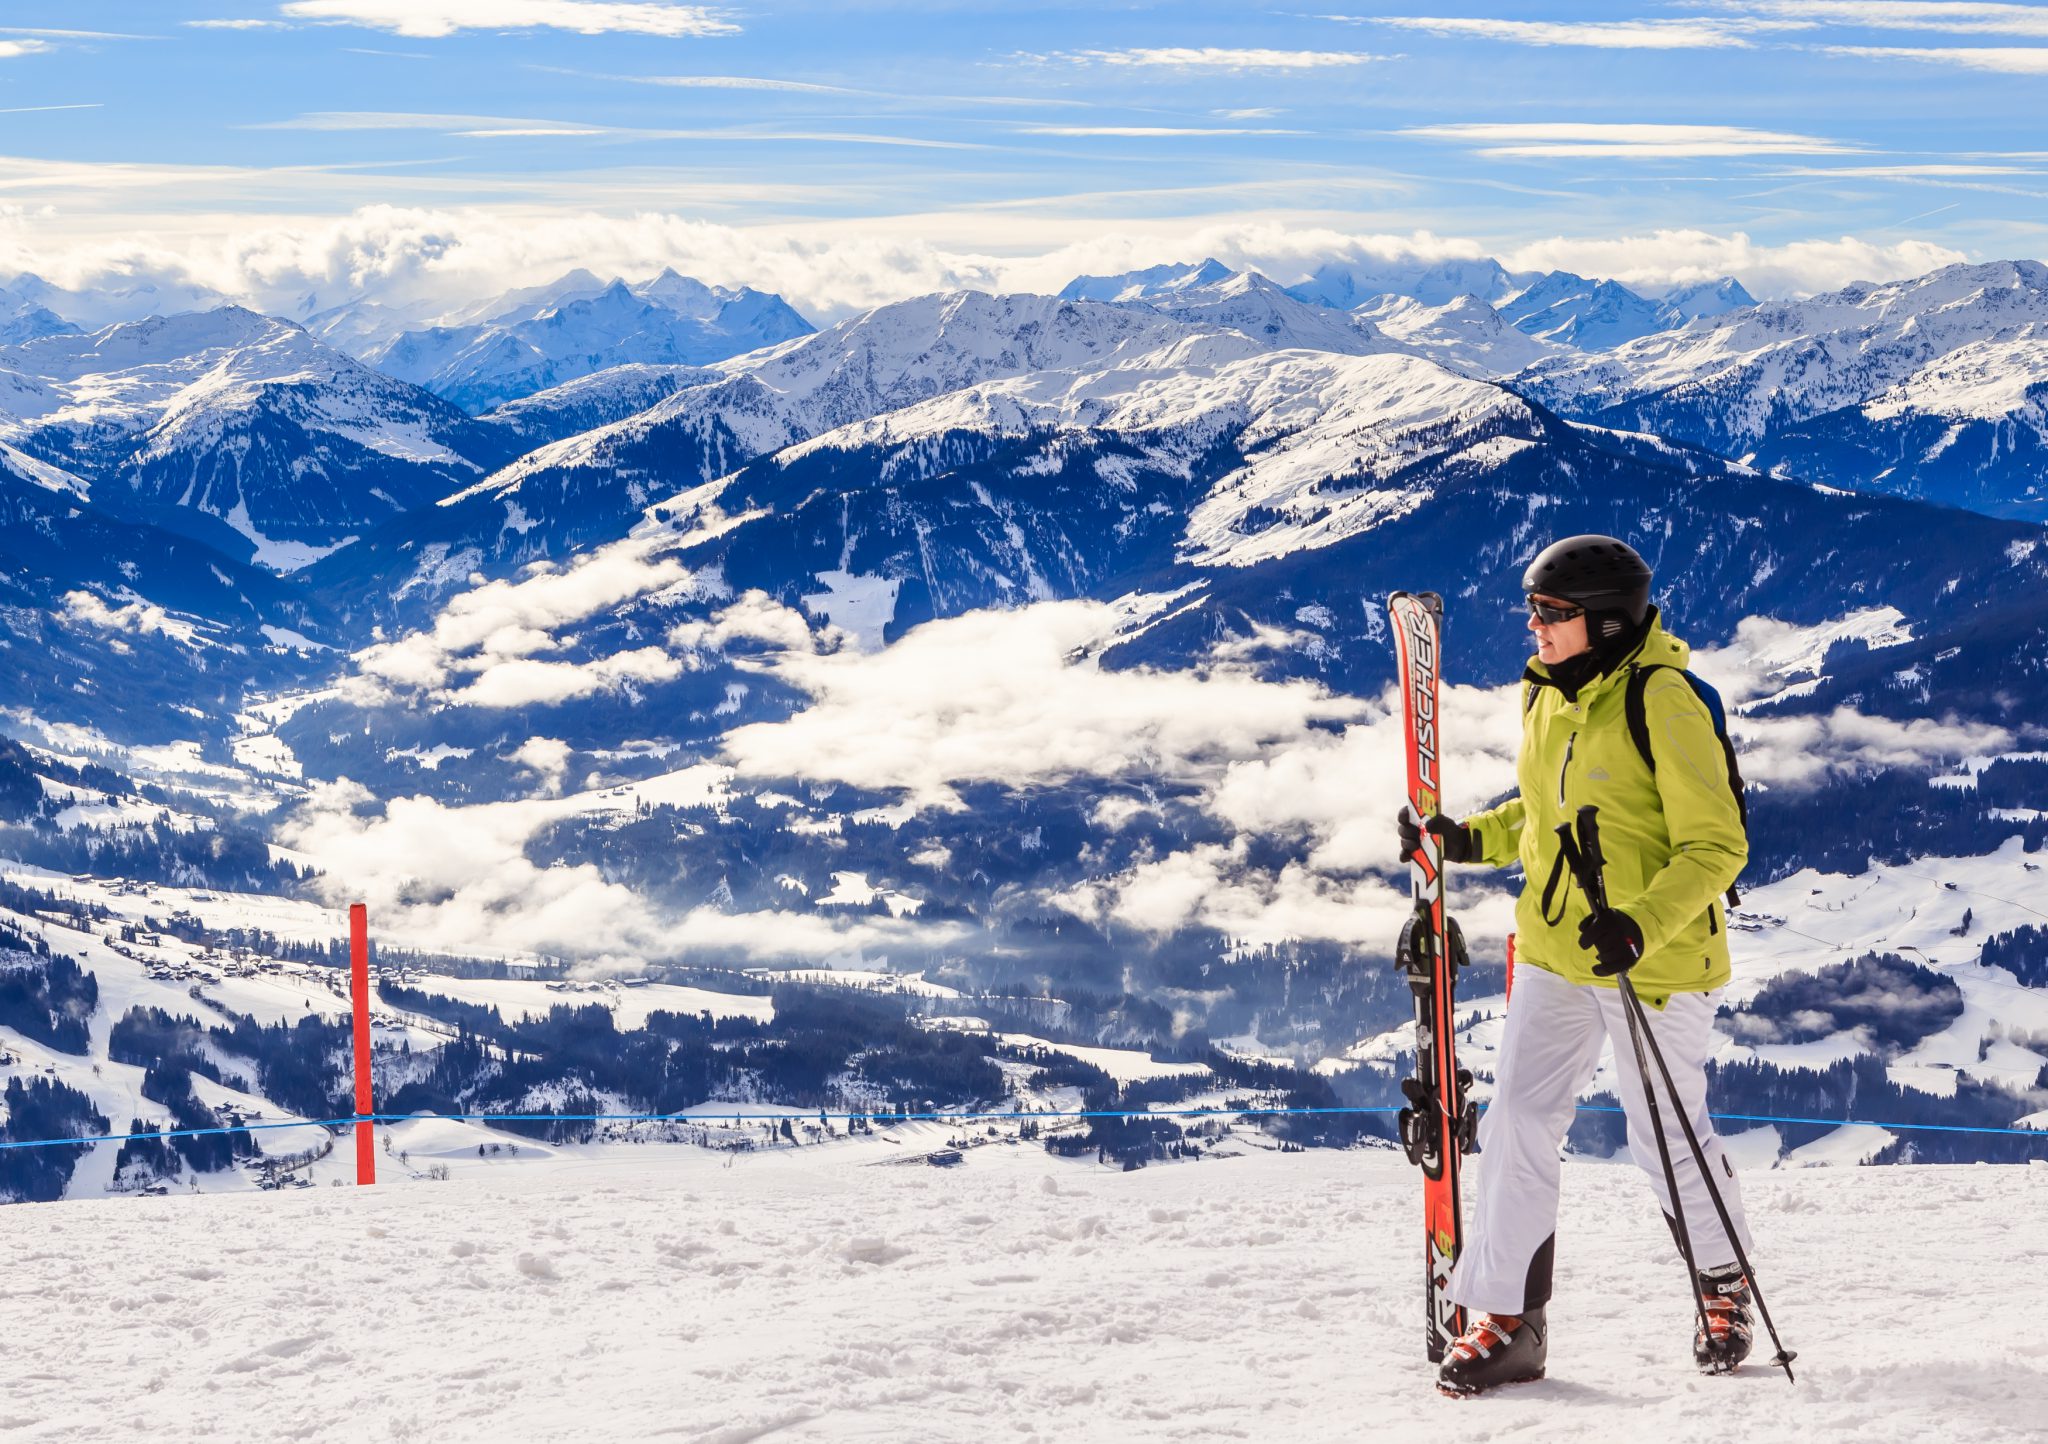 austria ski trip cost